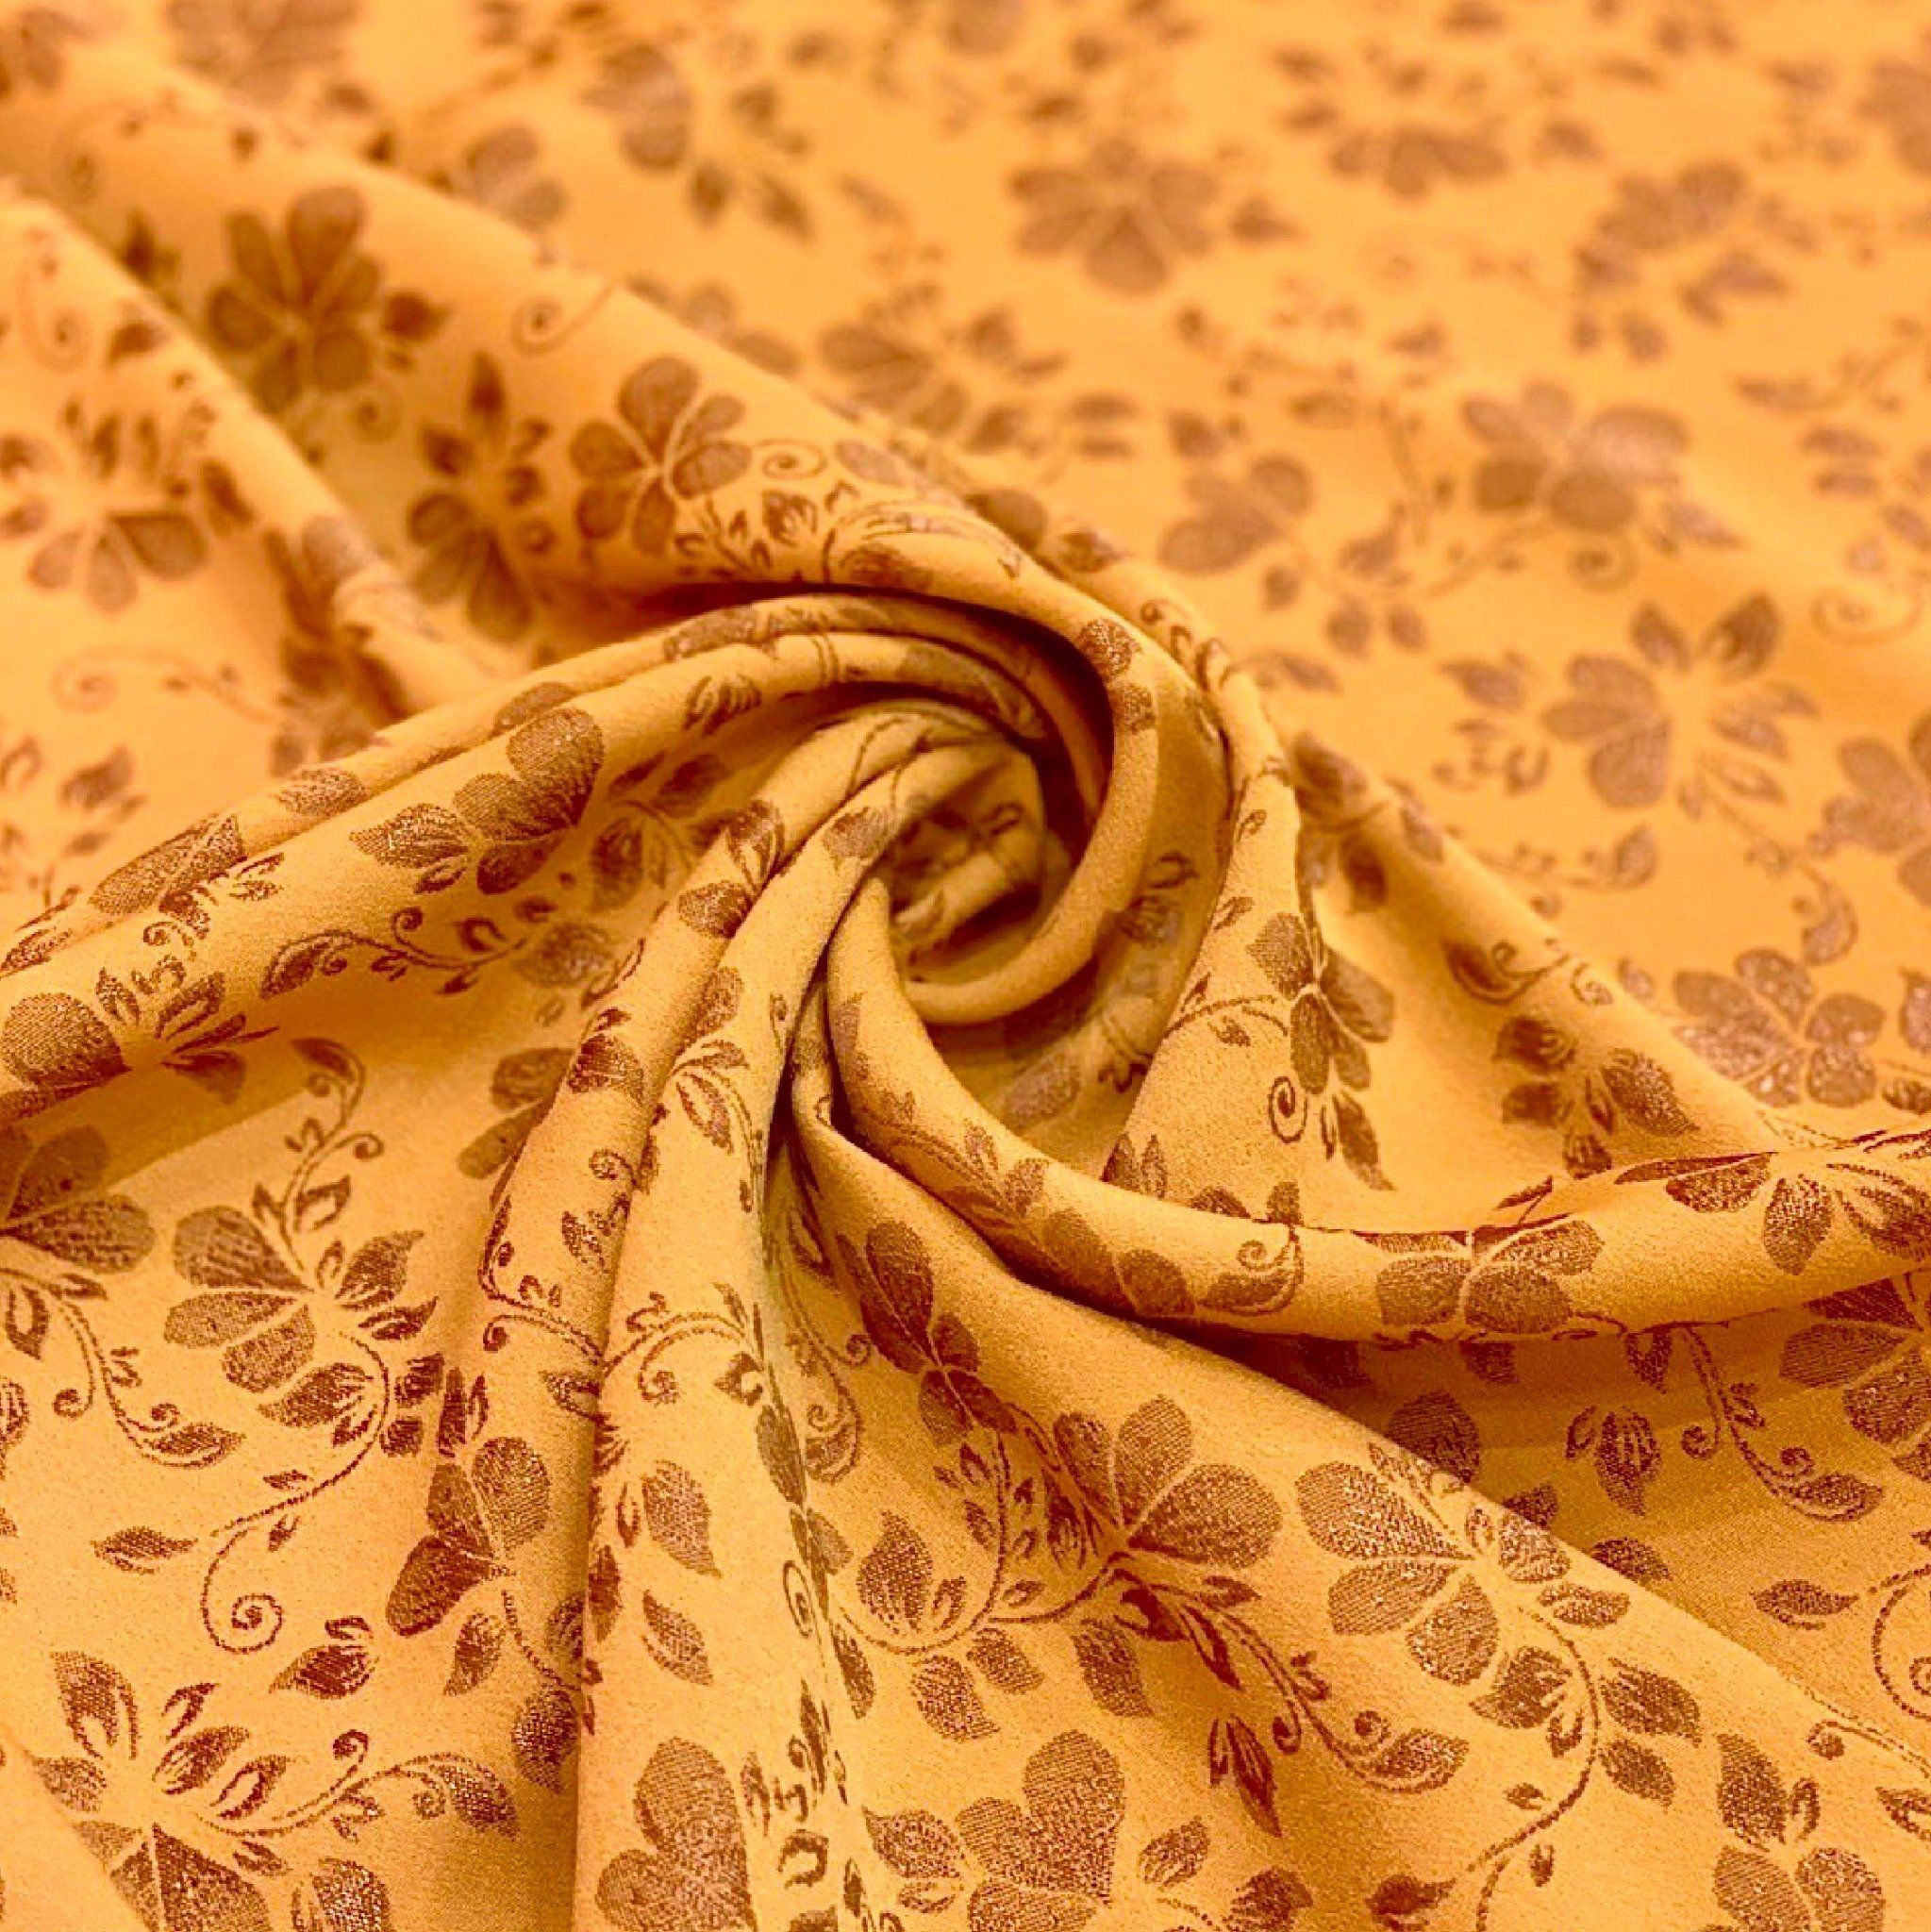 EBQN001078 Vải Hoa Co Giãn Màu Vàng Khổ 1m15 Dài 1m1